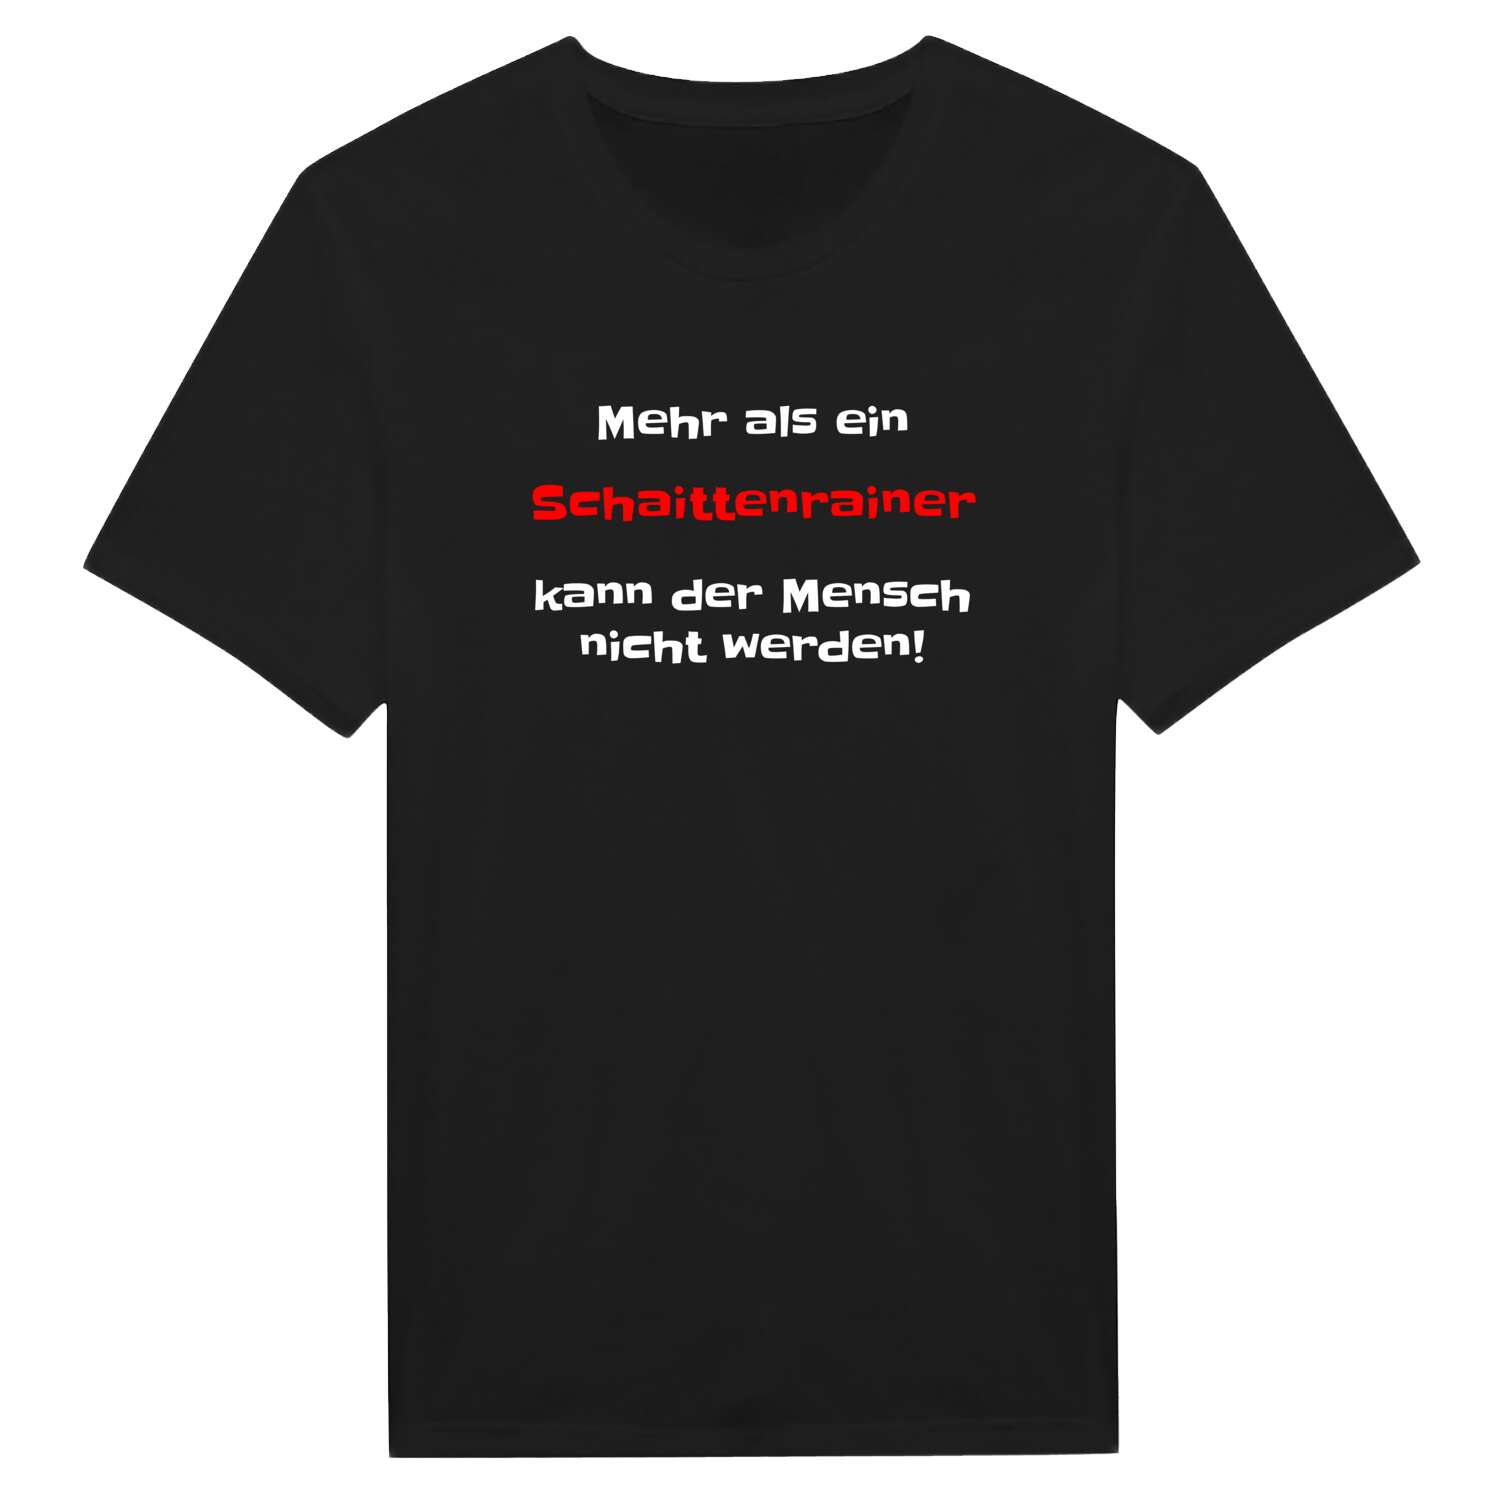 Schaittenrain T-Shirt »Mehr als ein«